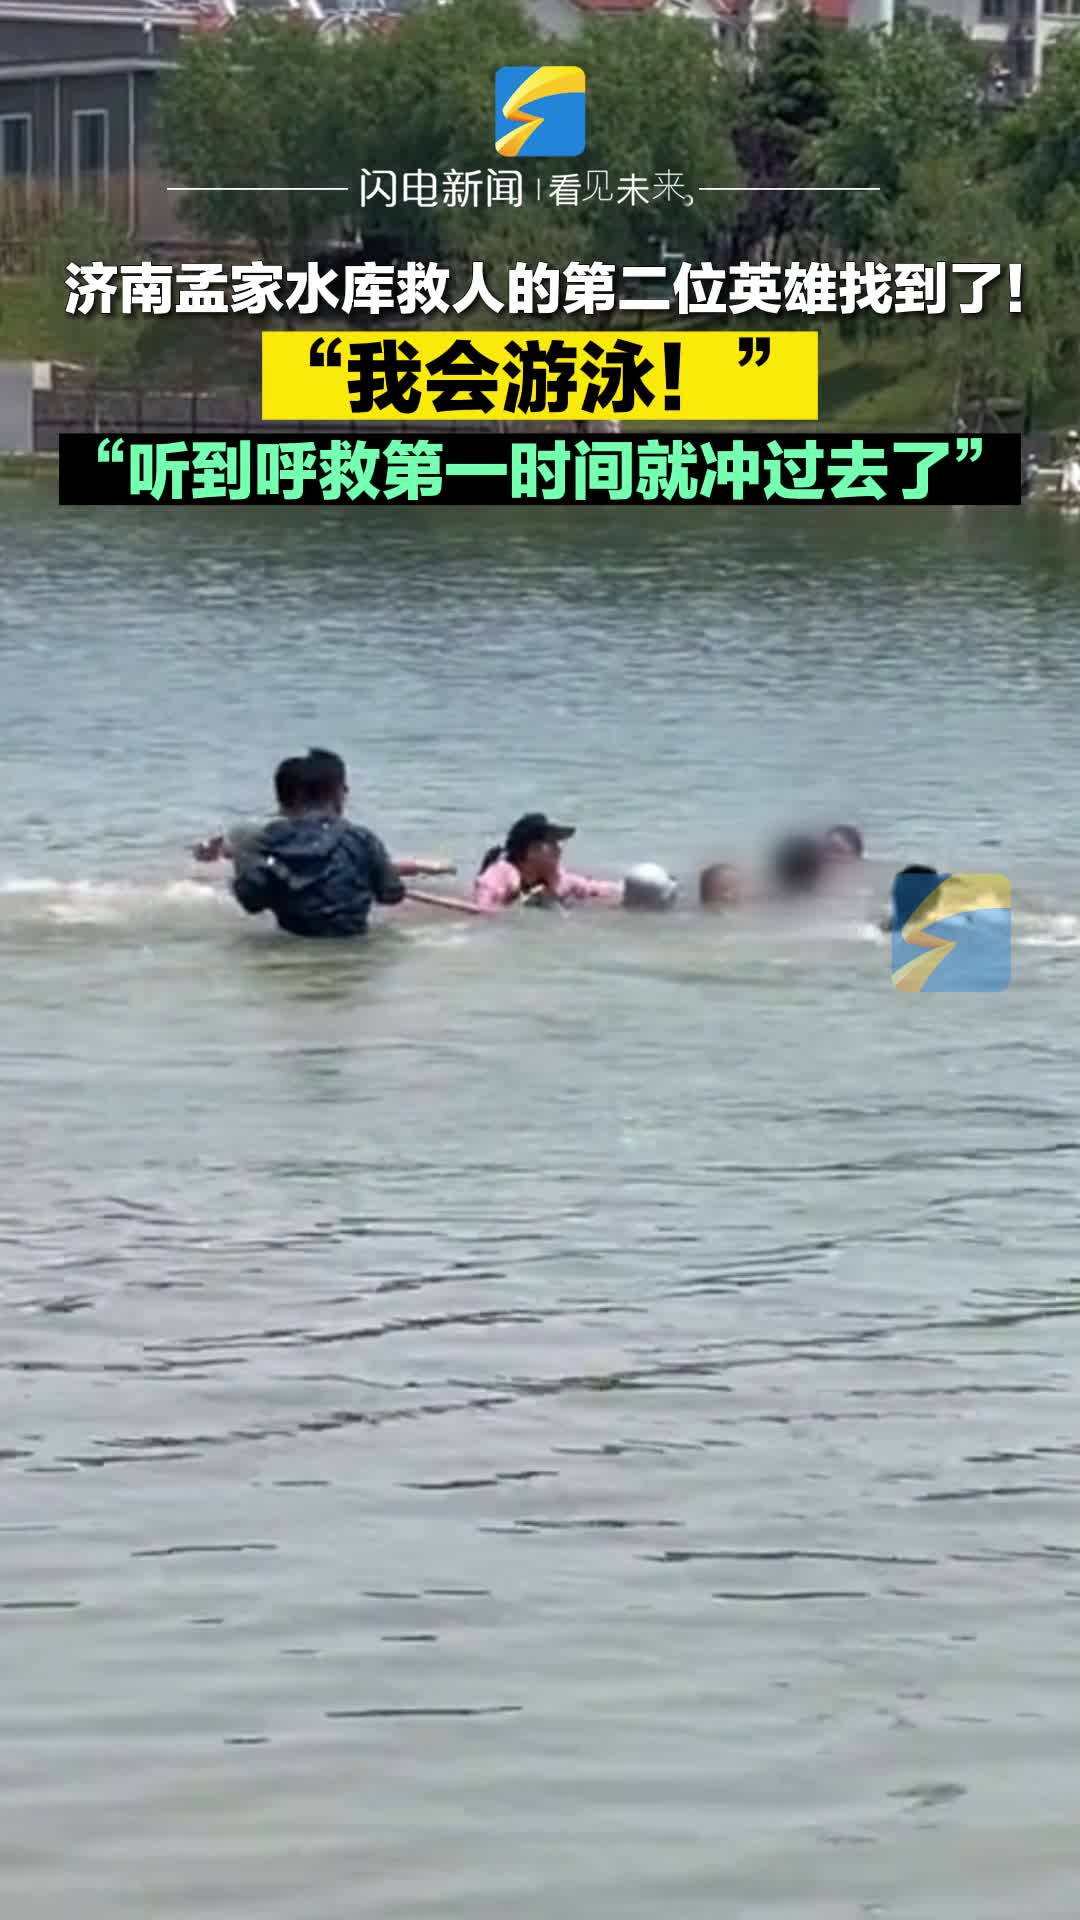 我会游泳，第一反应就是赶紧跑去救人！济南热心市民合力救起多名溺水者